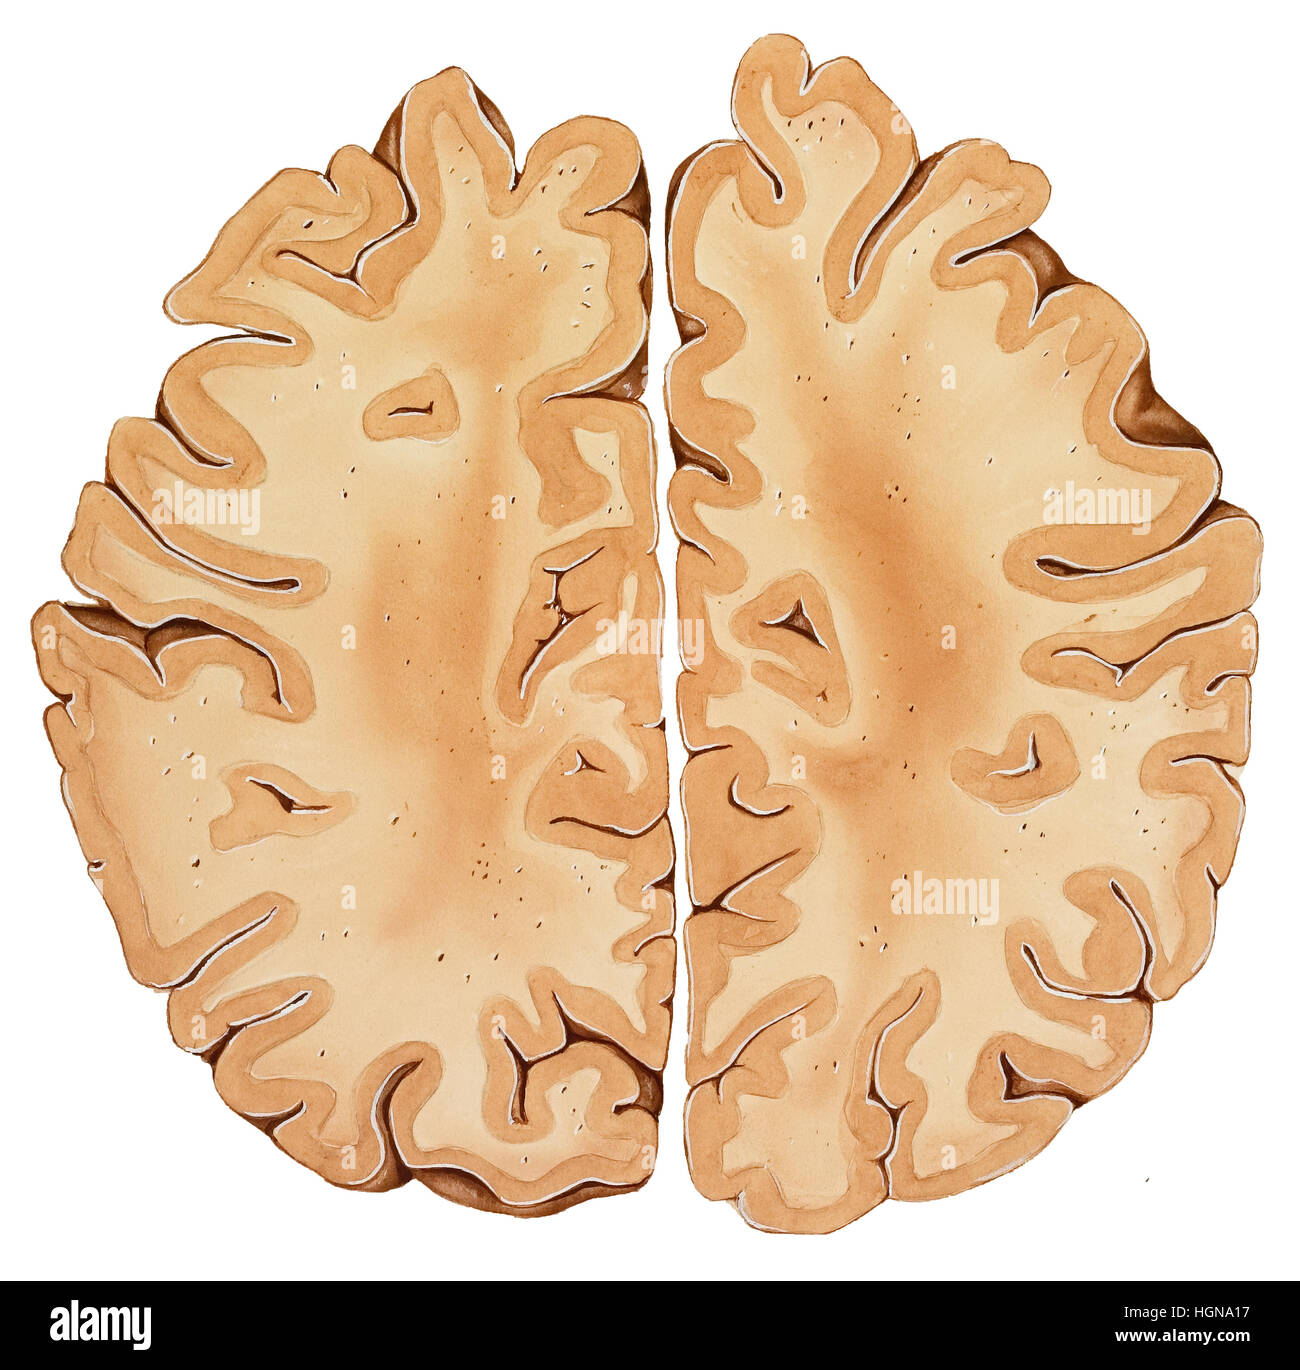 Gehirn-Abschnitt von der Spitze eines normalen menschlichen Kopfes (höhere Abschnitt), sagittale Abschnitt. Stockfoto